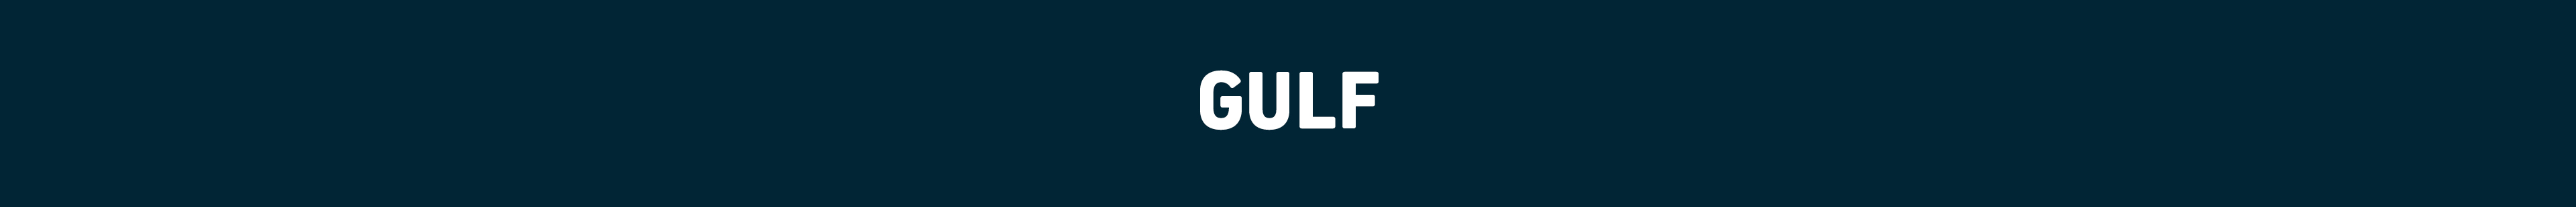 Gulf.jpg